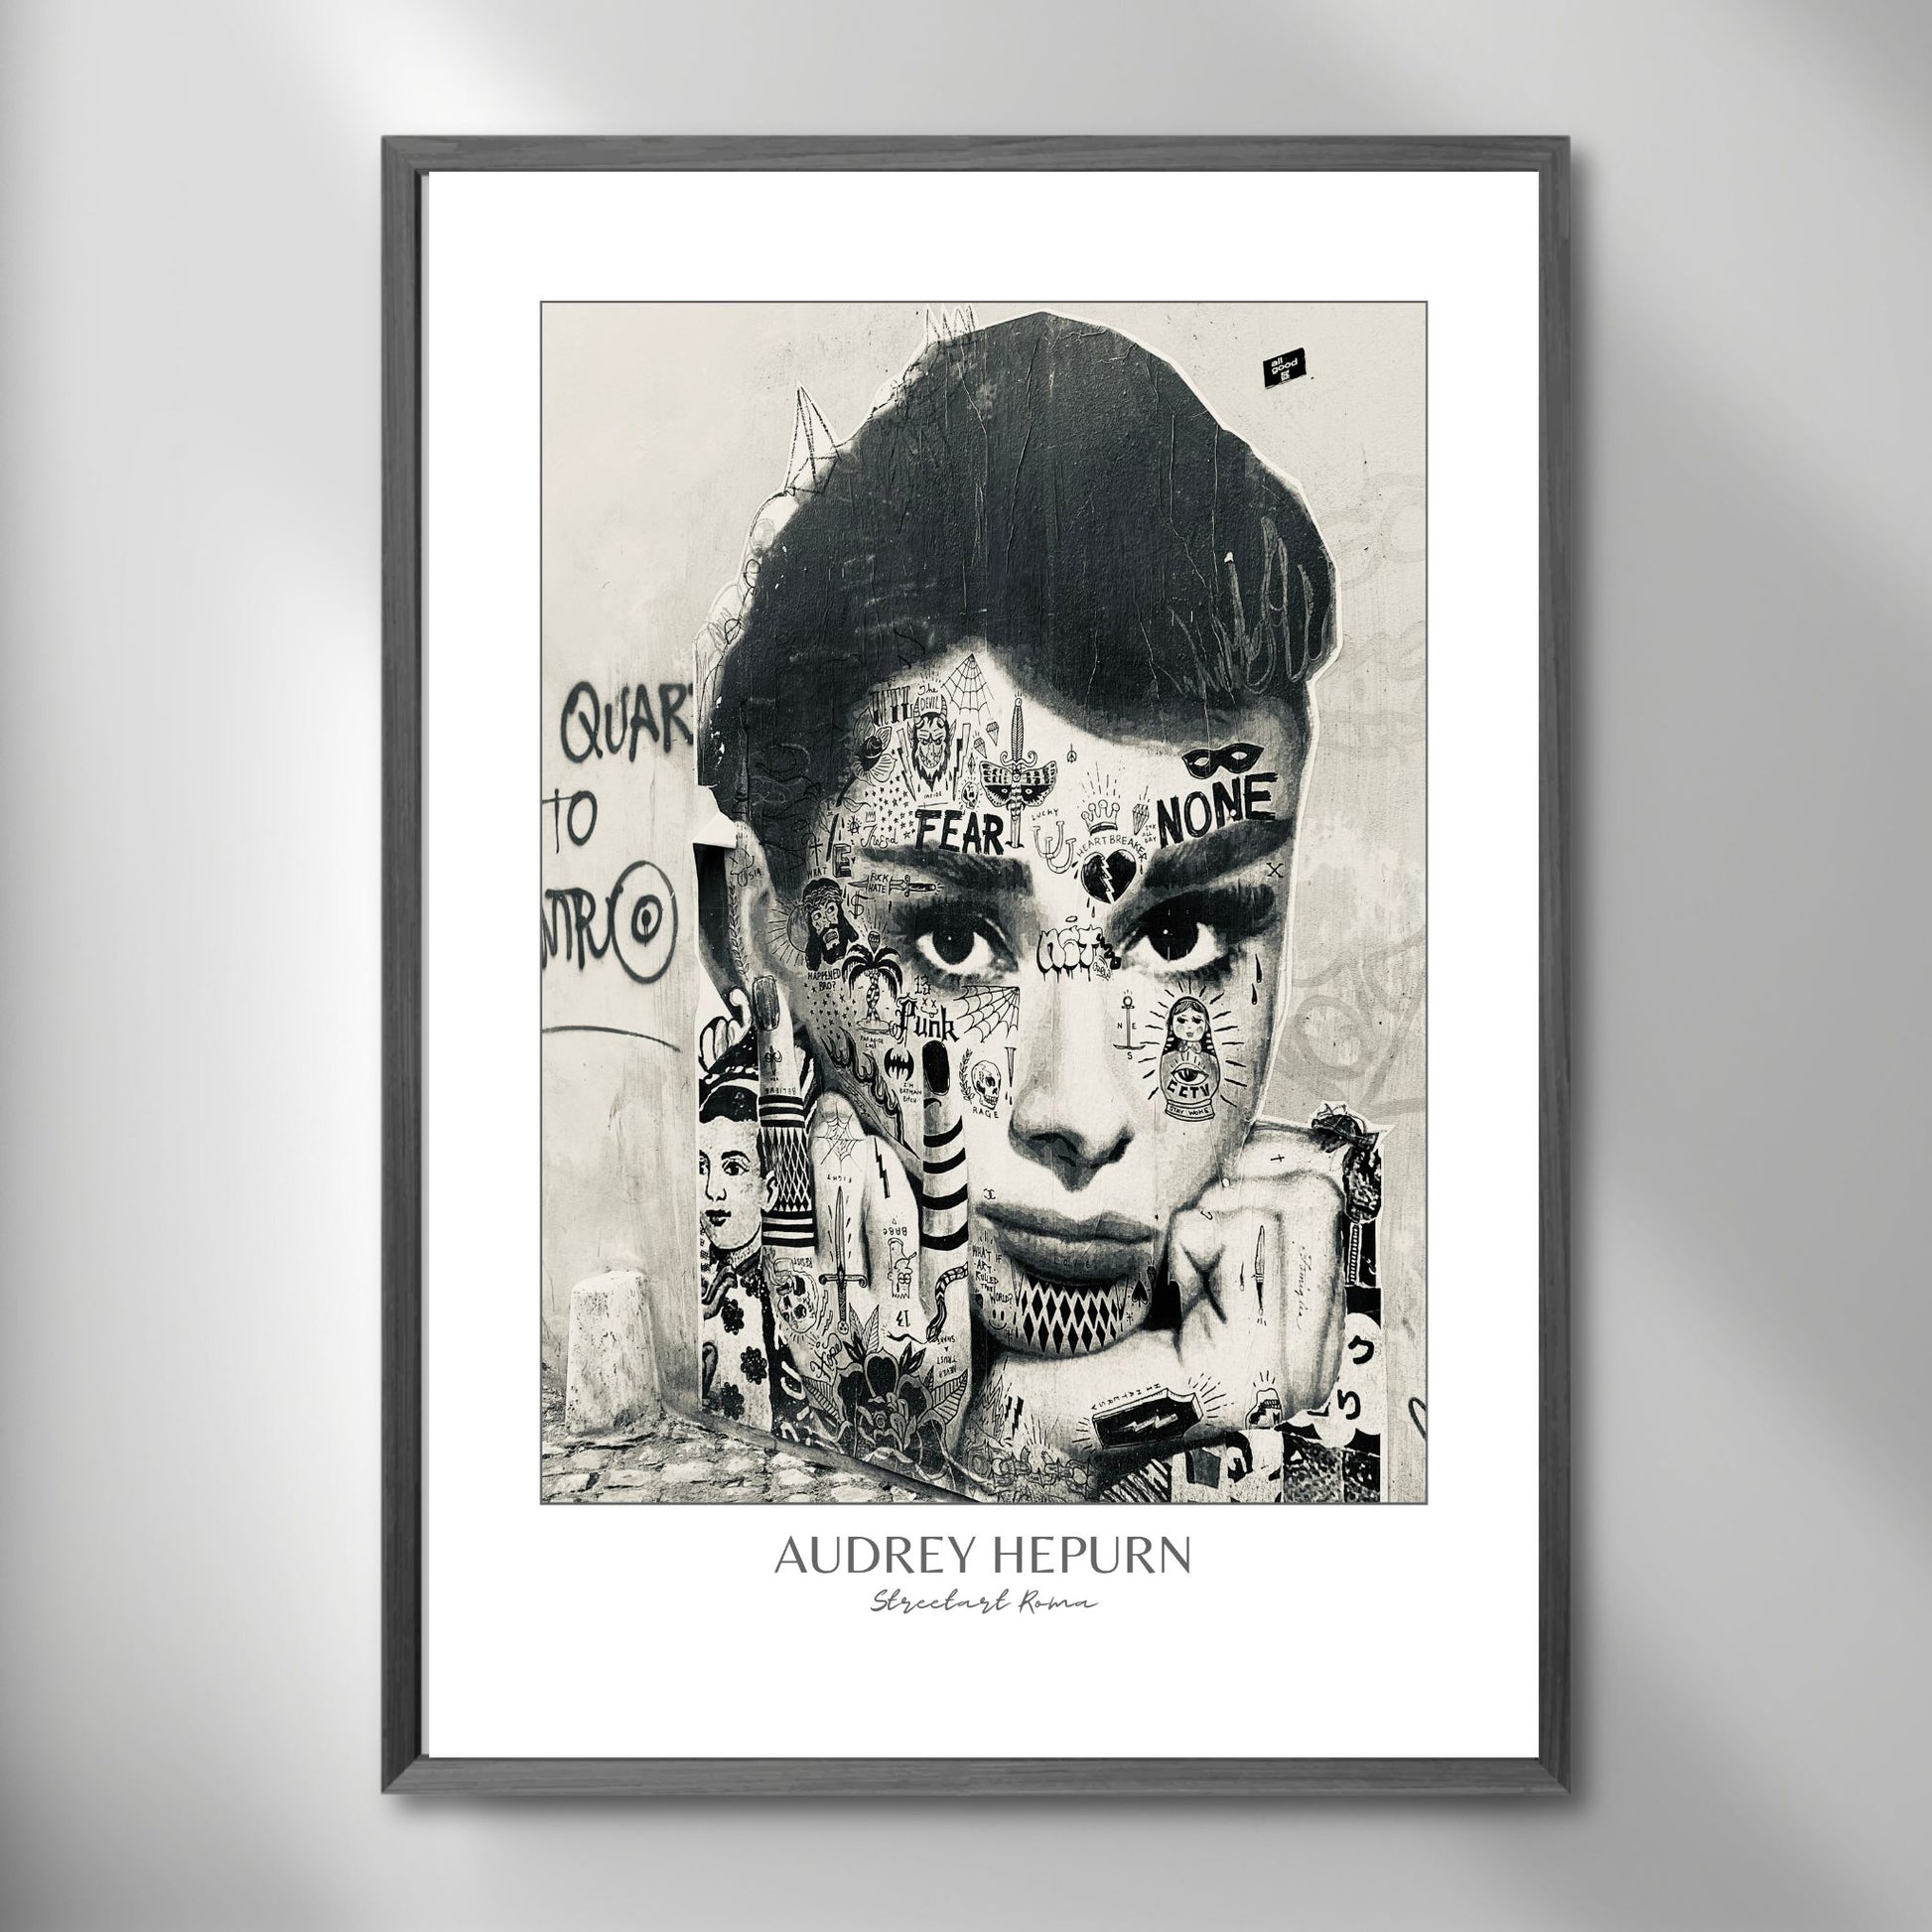 La deg bli transportert til den pulserende gatemiljøet i Roma med "Audrey Hepburn" plakat. Dette paste up kunstverket, inspirert av den ikoniske skuespilleren, gir en smakebit av den unike gatekunsten som preger byen. Illystrasjonen viser motivet i mørk ramme på en vegg.